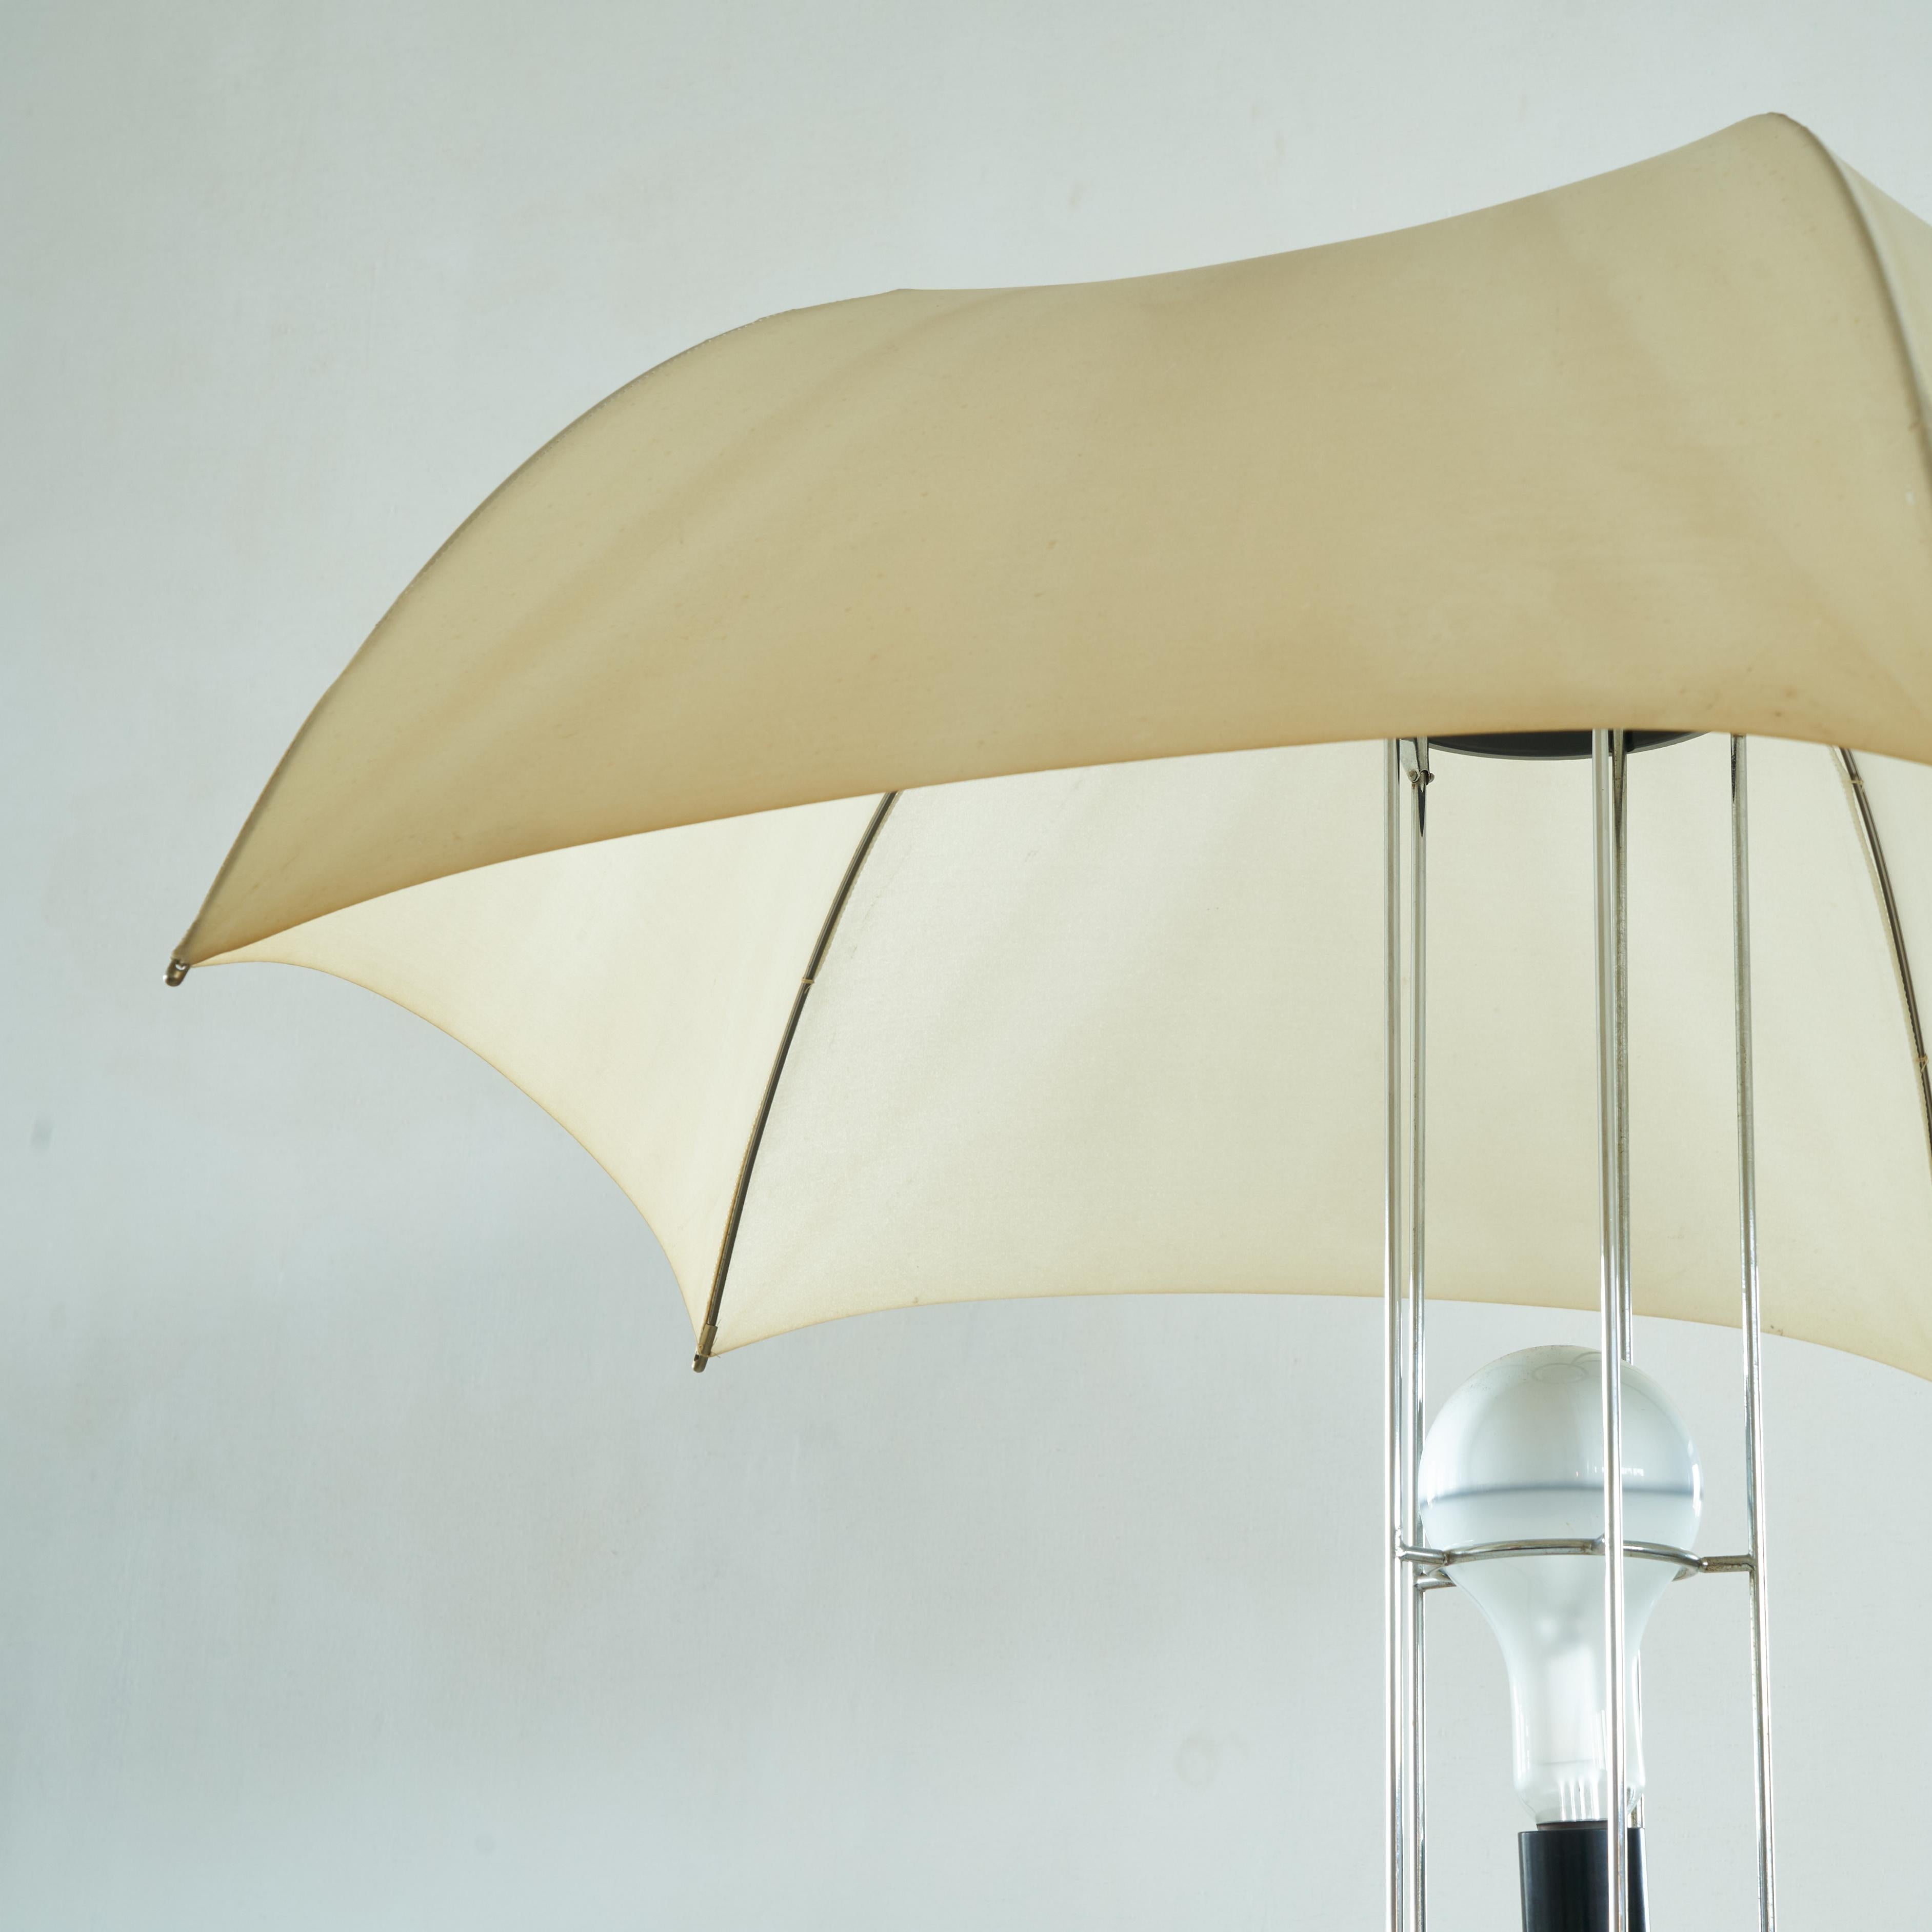 20th Century Gijs Bakker Umbrella Table Lamp for Artimeta 1973 For Sale